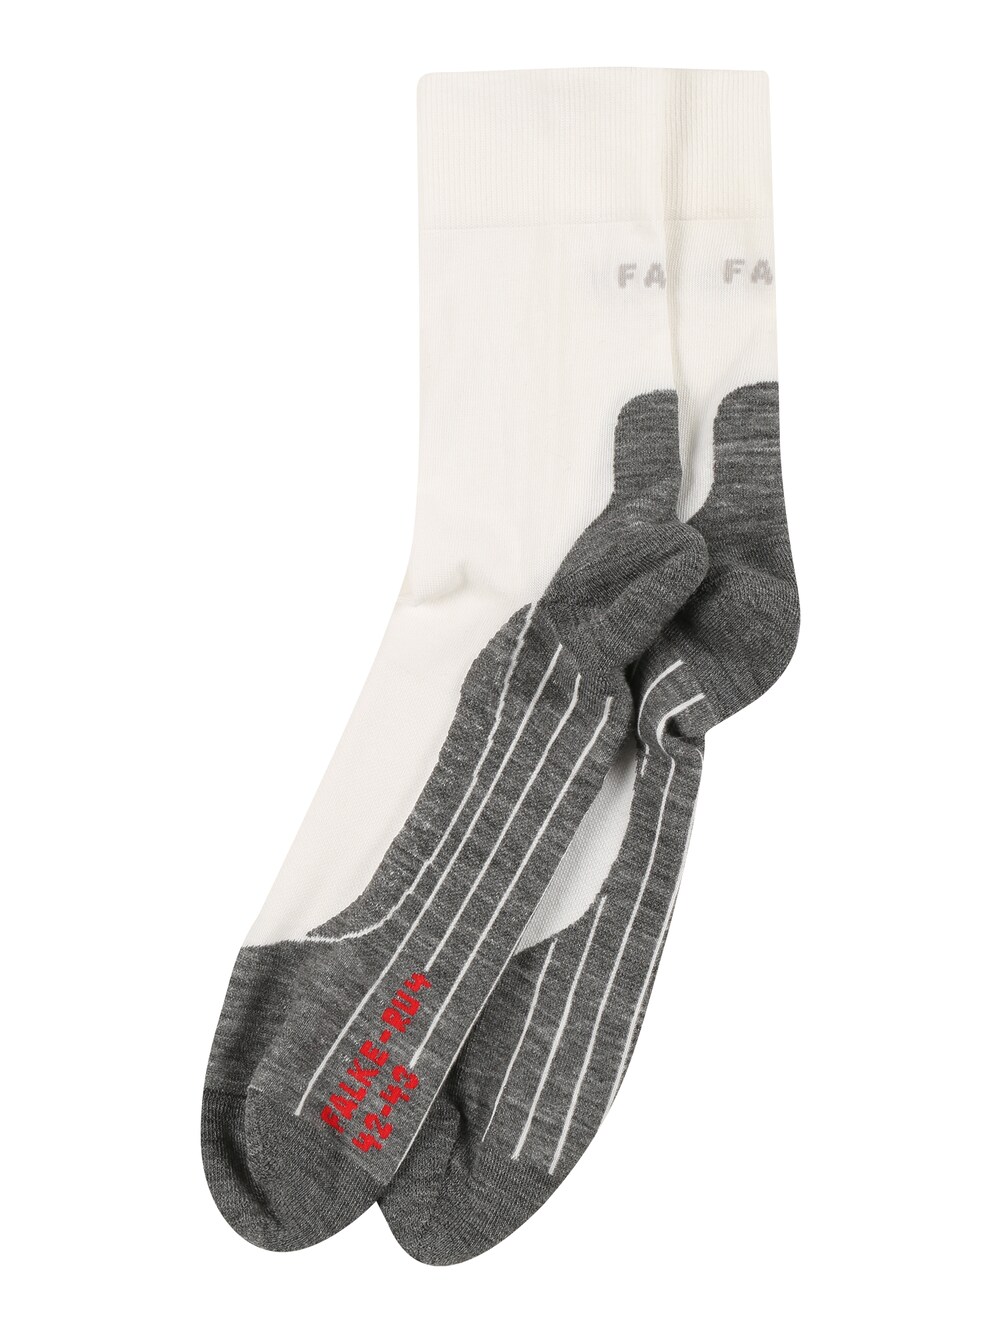 Спортивные носки Falke RU4, белый